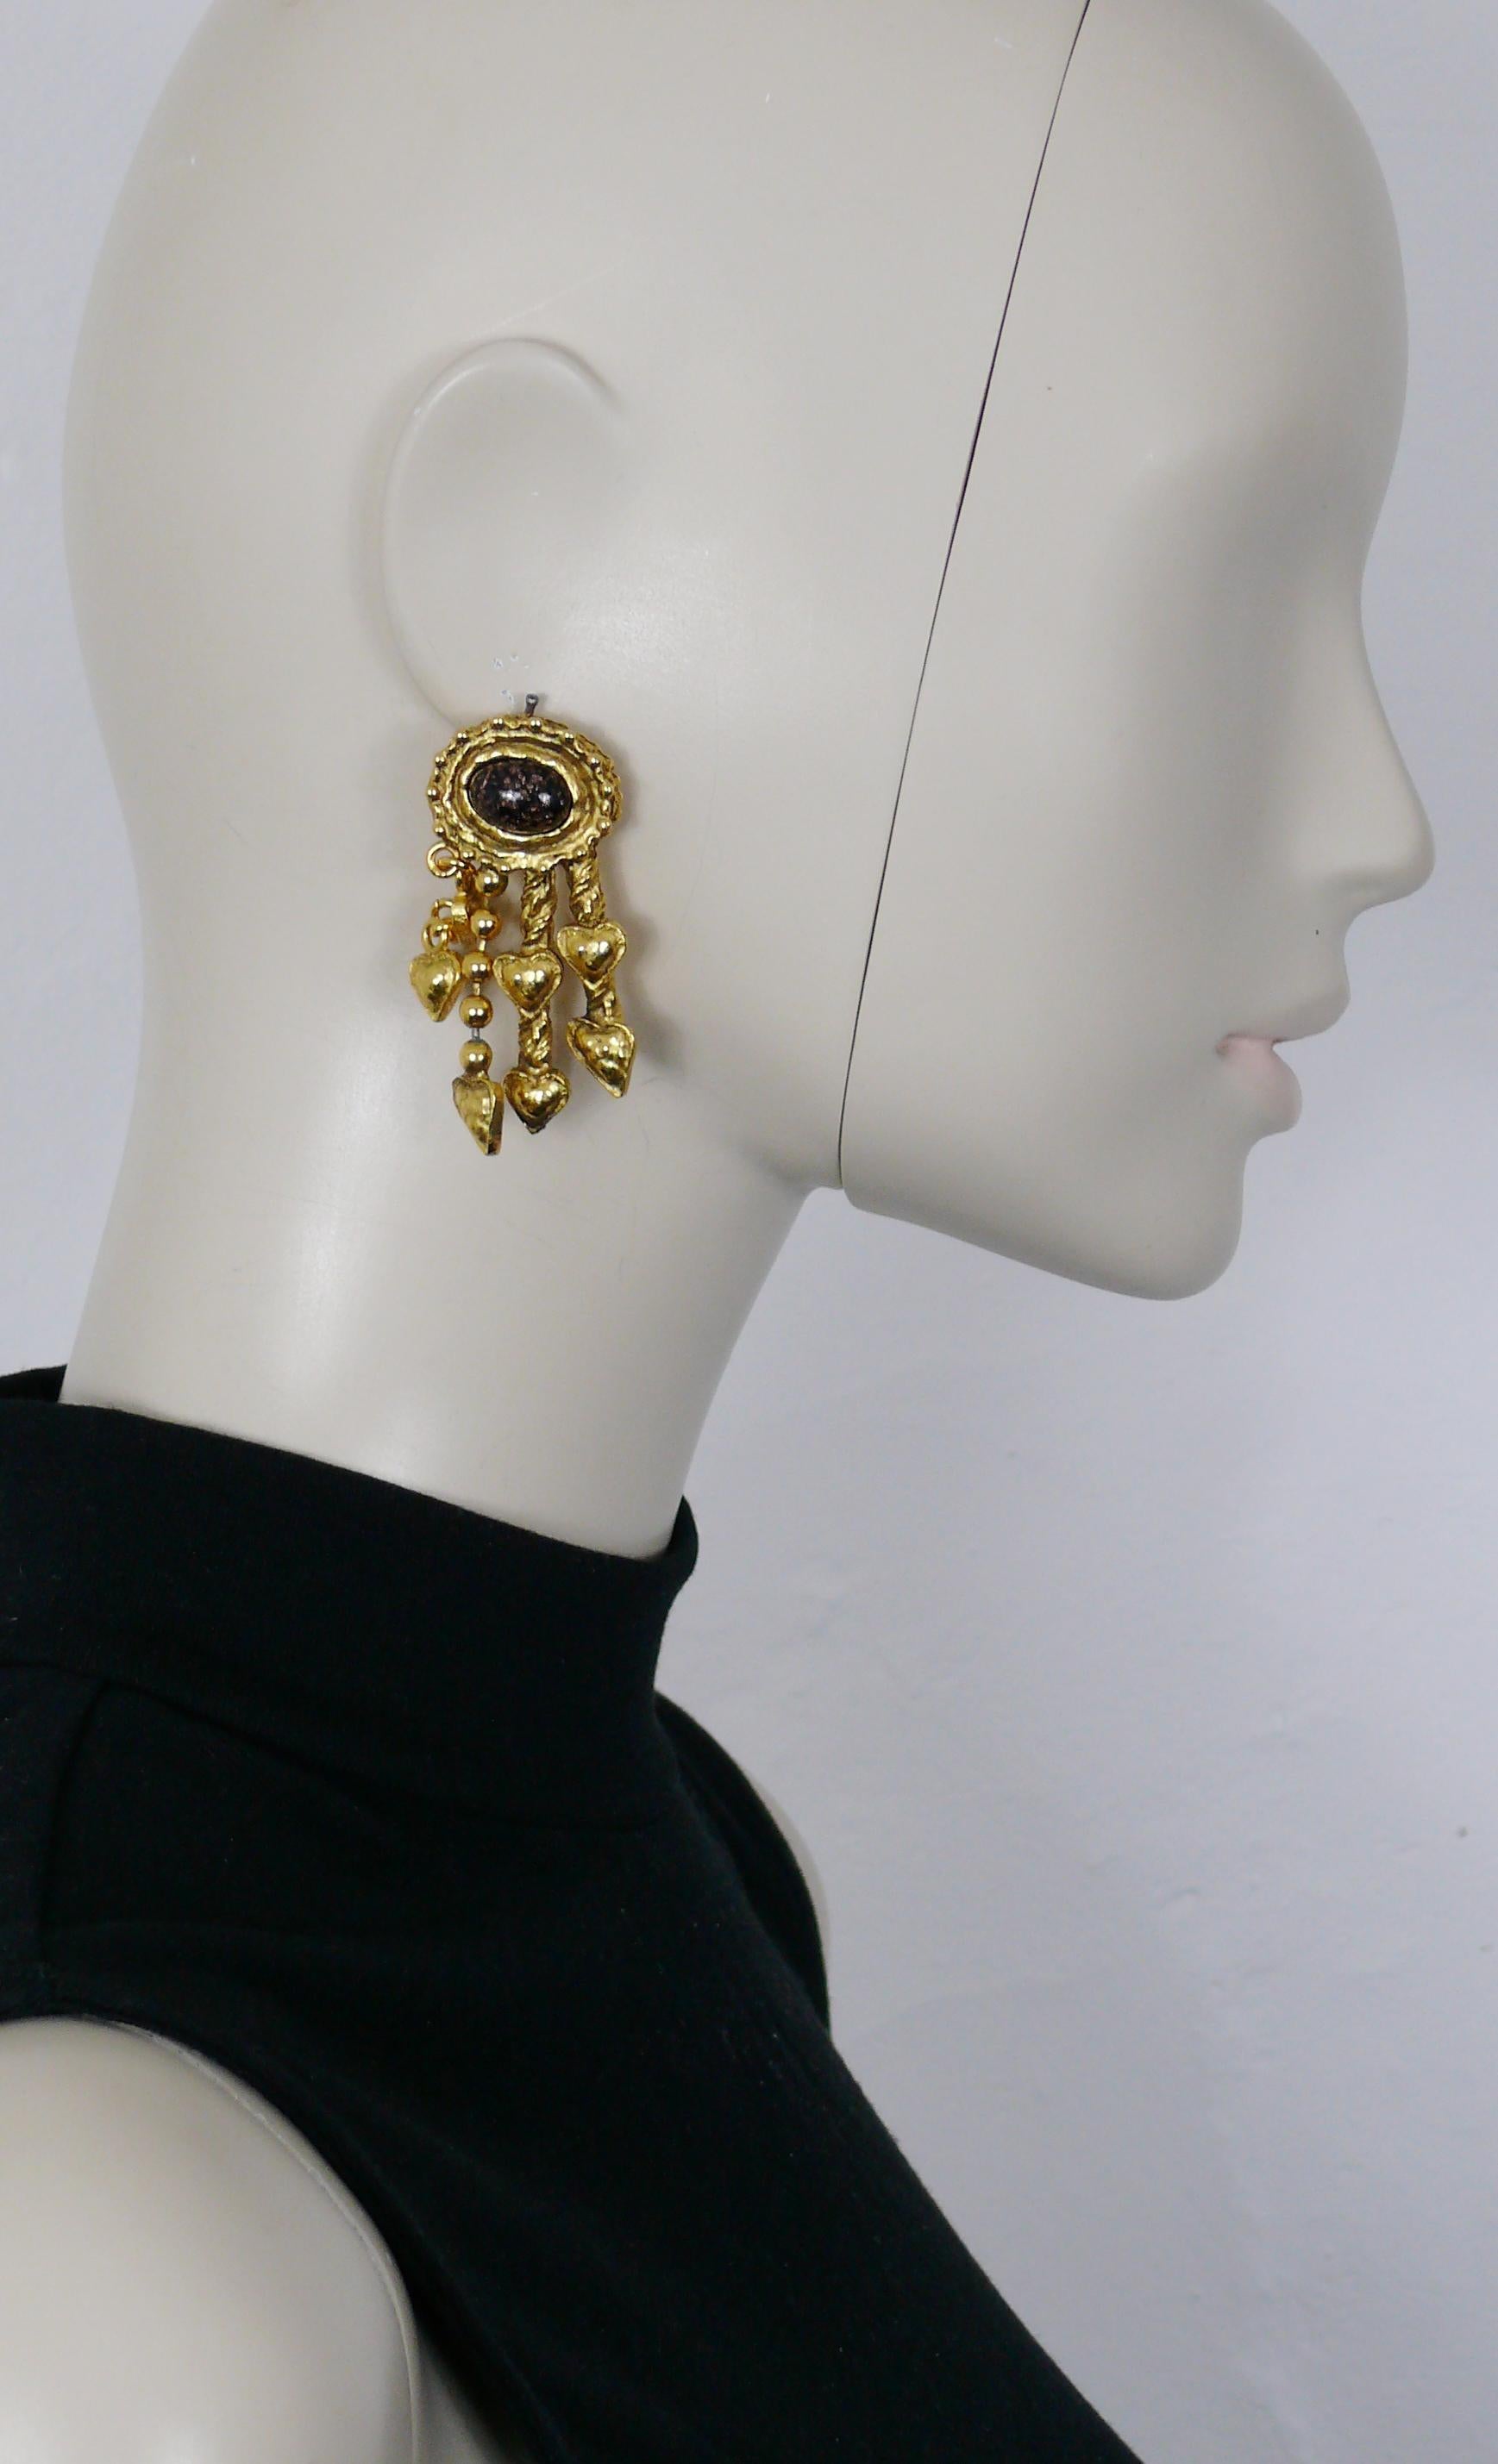 CHRISTIAN LACROIX Vintage-Ohrringe mit goldfarbener Struktur (Clip-on), verziert mit einem glitzernden braunen ovalen Glascabochon und Herzanhängern.

Geprägter CHRISTIAN LACROIX CL Made in France.

Ungefähre Maße: max. Höhe ca. 5,8 cm (2,28 Zoll) /